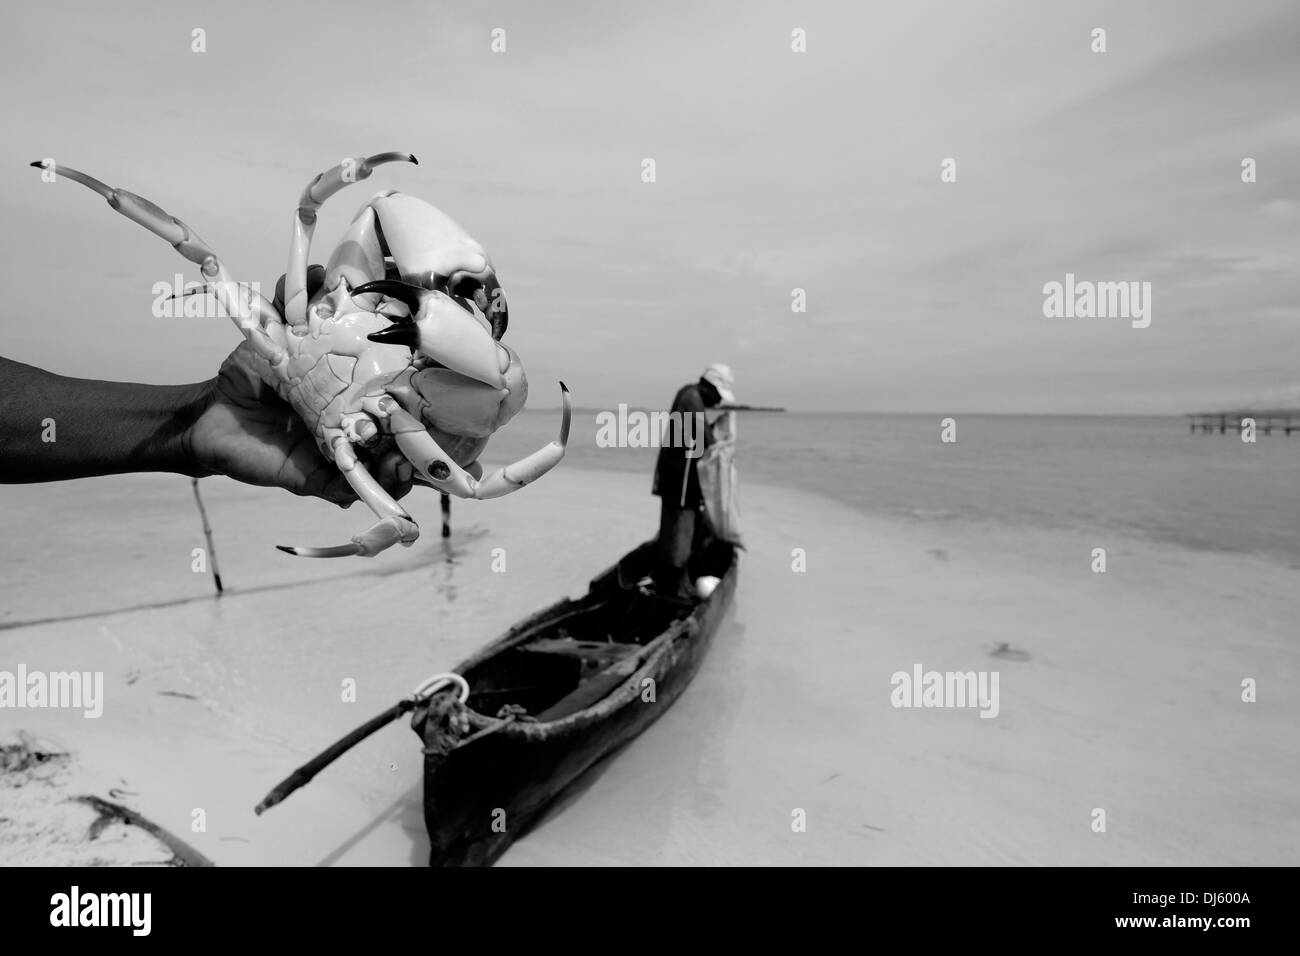 Ein Fischer aus dem Guna Menschen eine riesige Krabben, die er in einer kleinen Insel in der "Comarca" (Region) der Guna Yala Eingeborenen als Kuna im Archipel von San Blas Blas Inseln im Nordosten von Panama mit Blick auf das Karibische Meer bekannt. Stockfoto